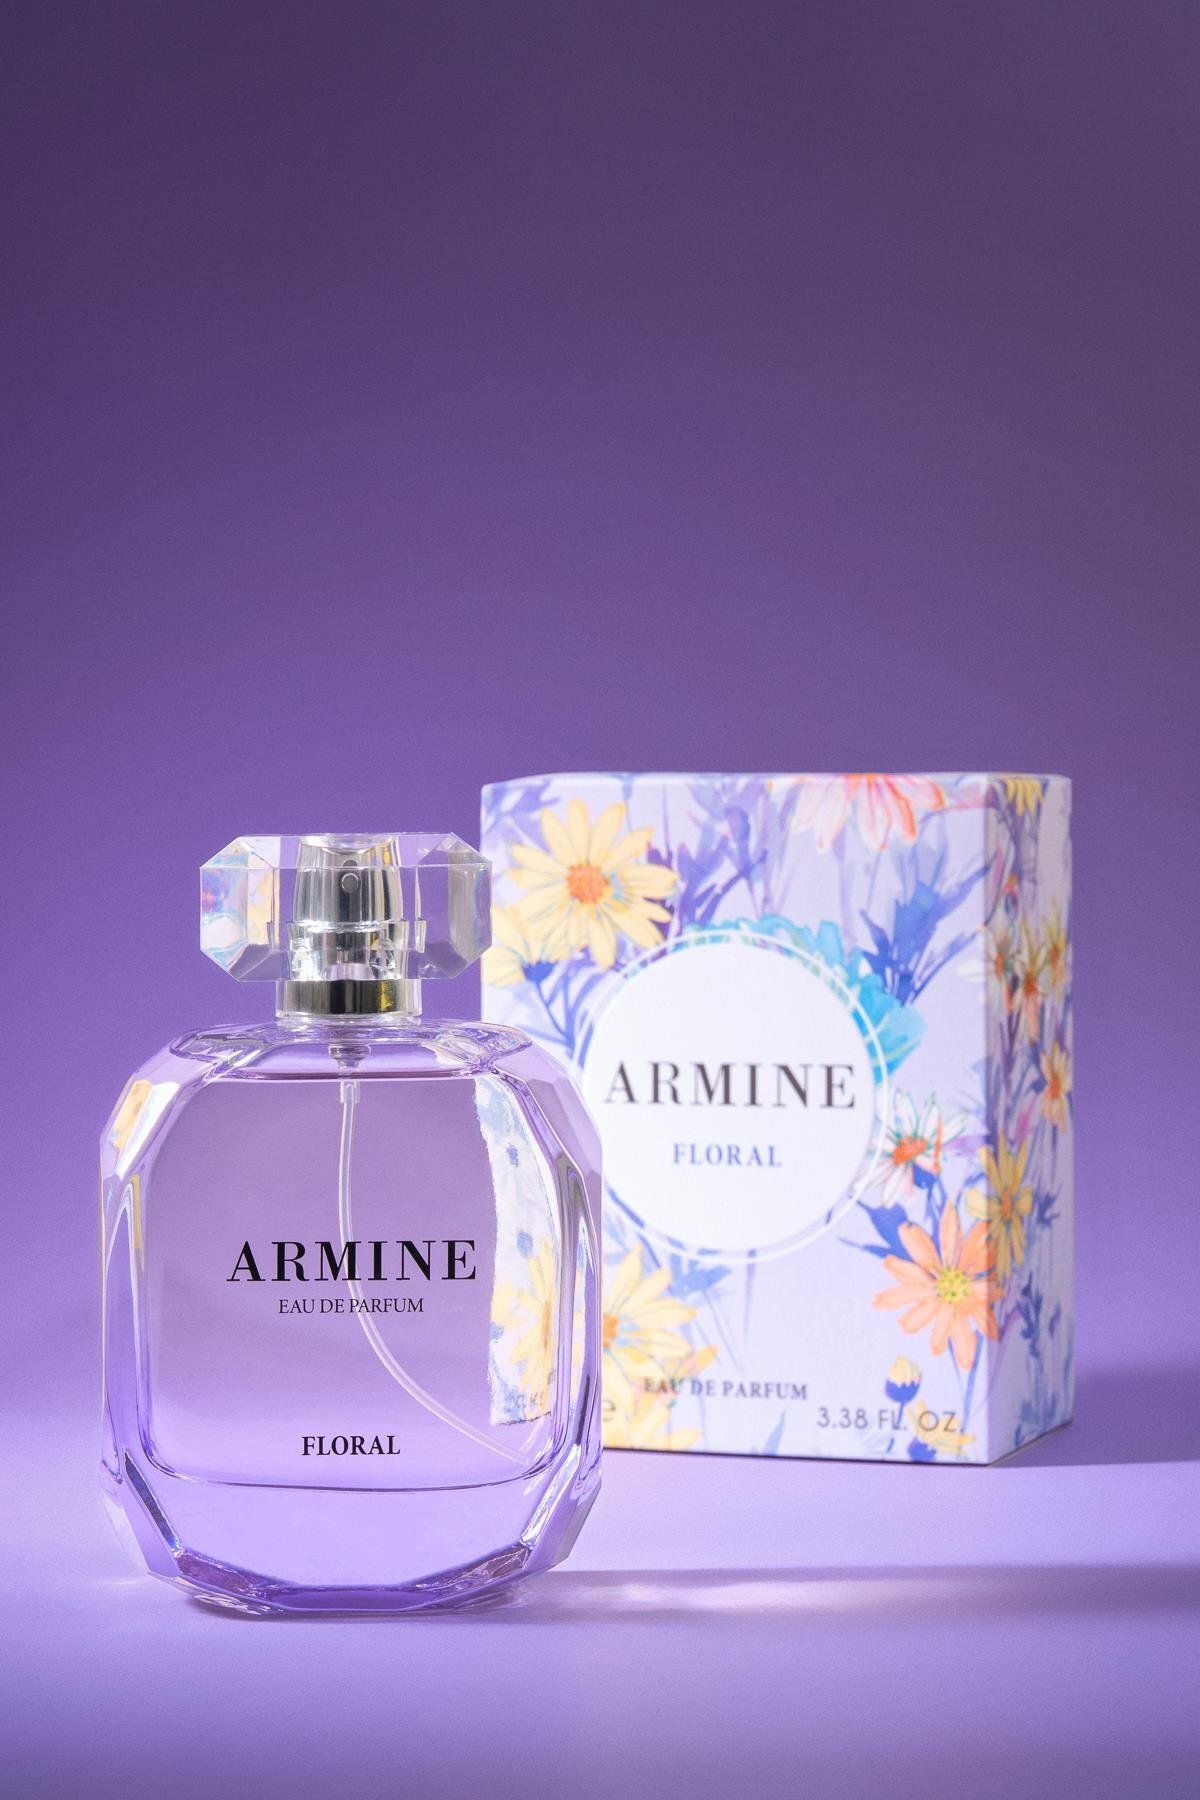 Armine Parfüm Floral 132